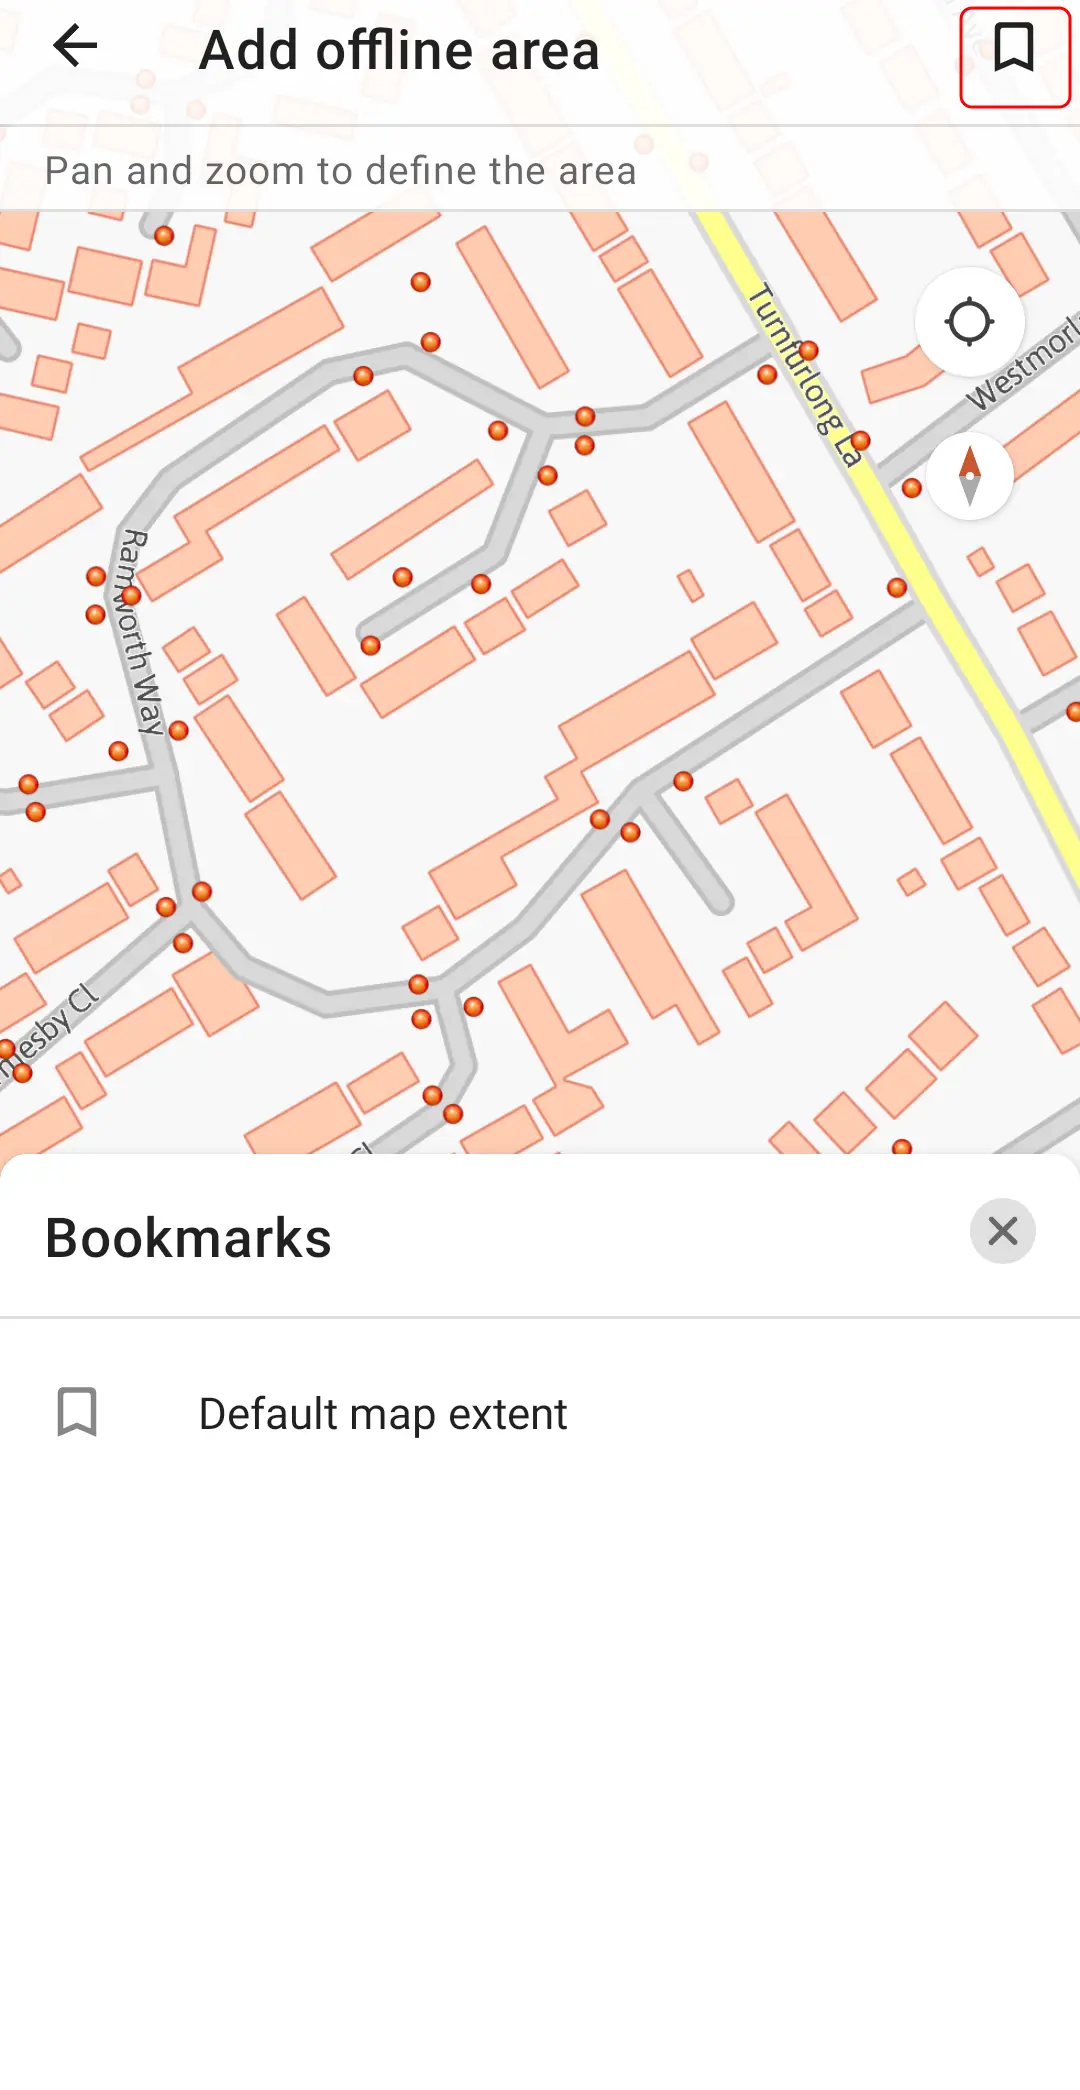 Field Maps Designer Offline areas bookmarks